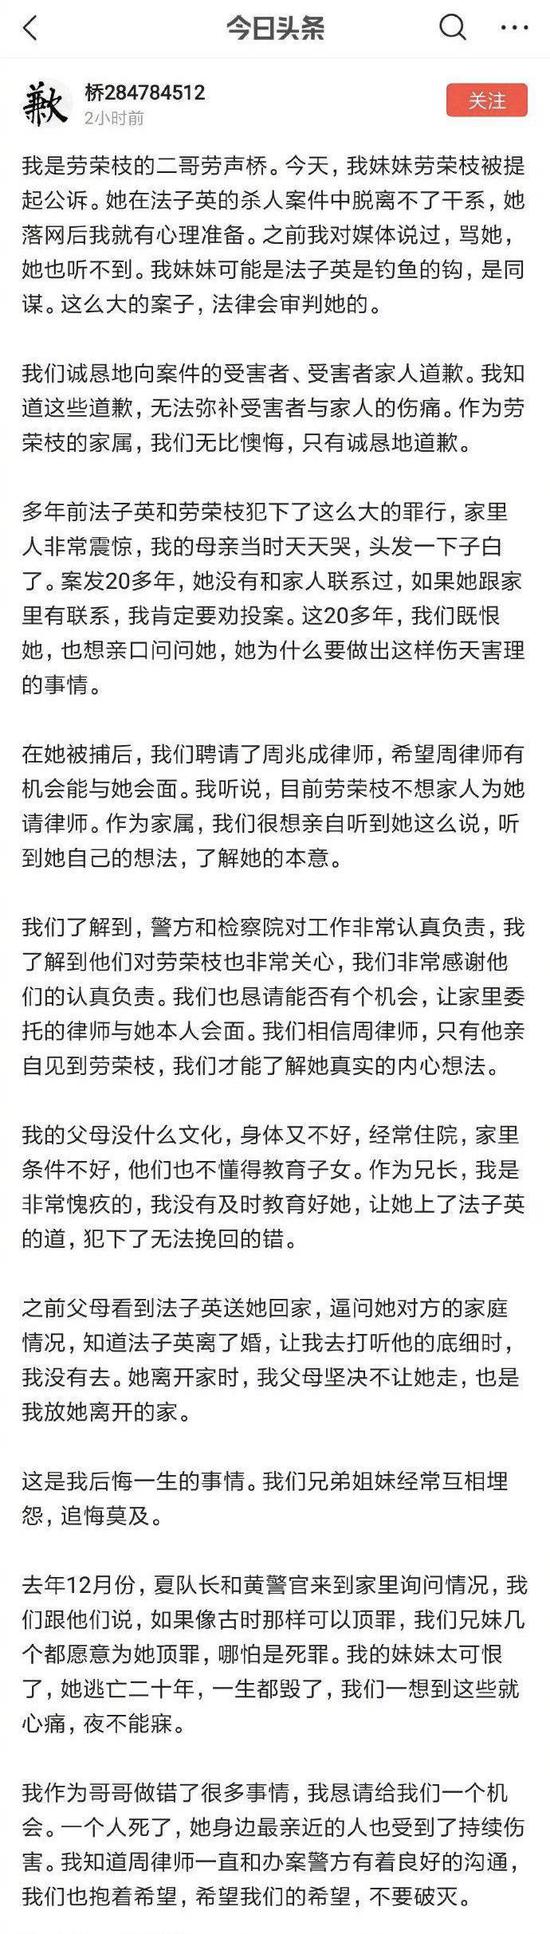 劳荣枝二哥劳声桥发表的道歉声明